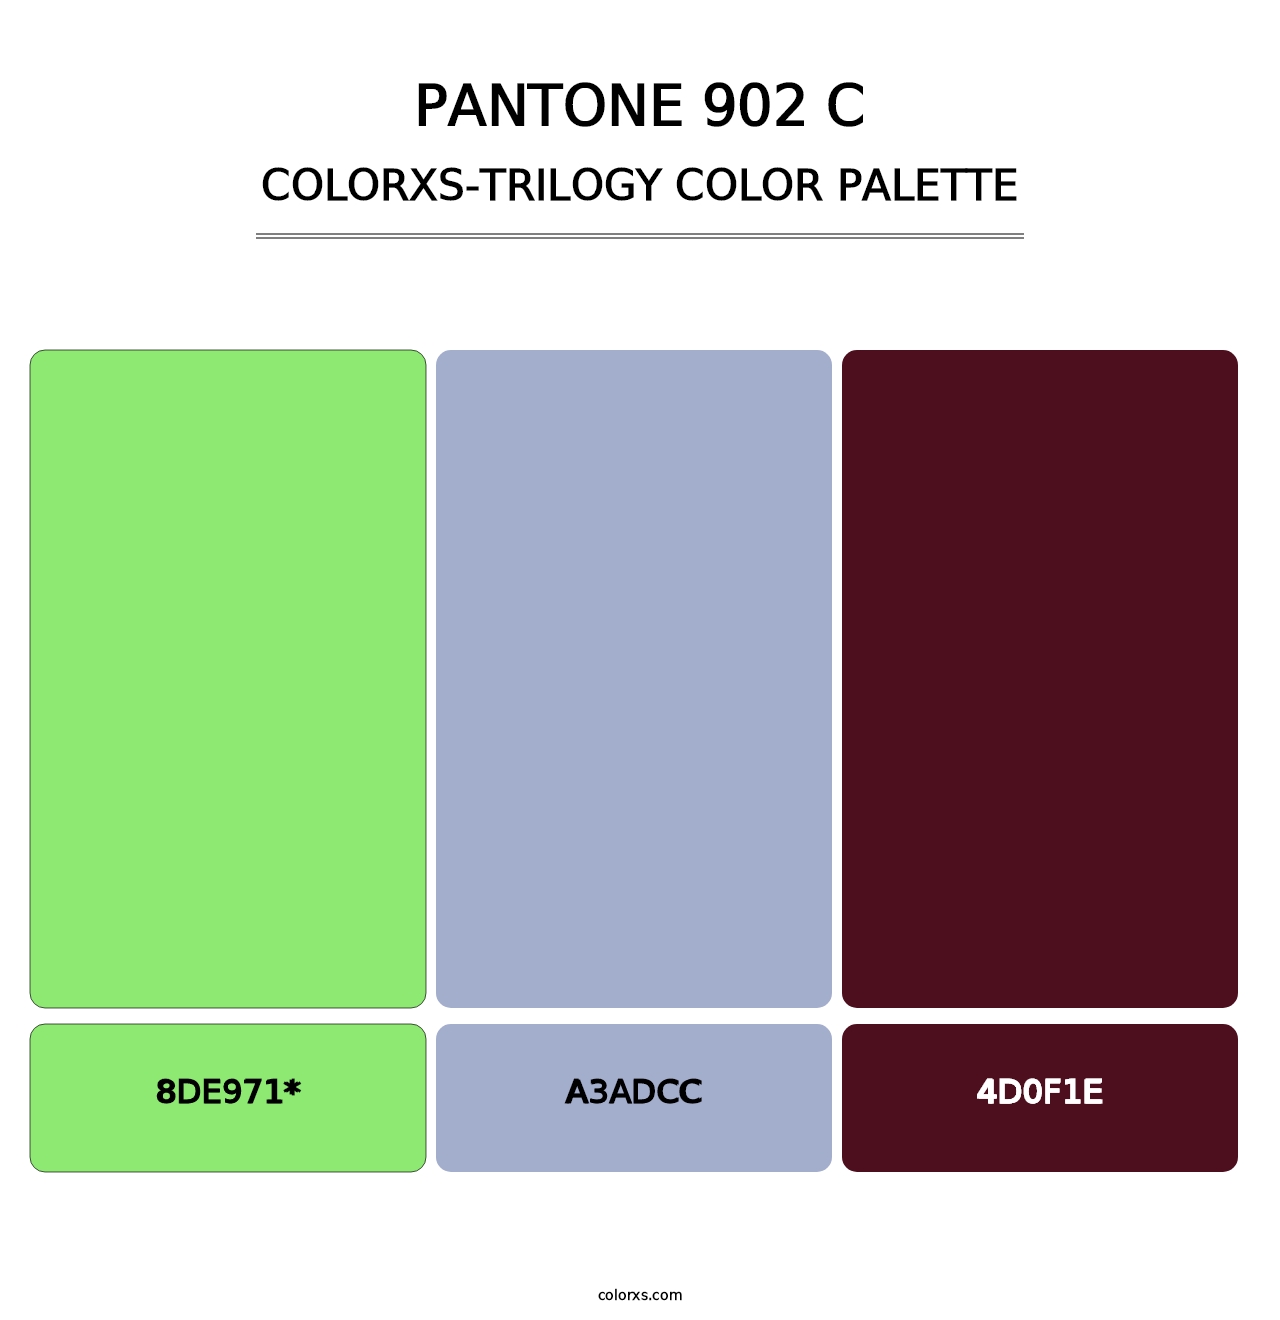 PANTONE 902 C - Colorxs Trilogy Palette